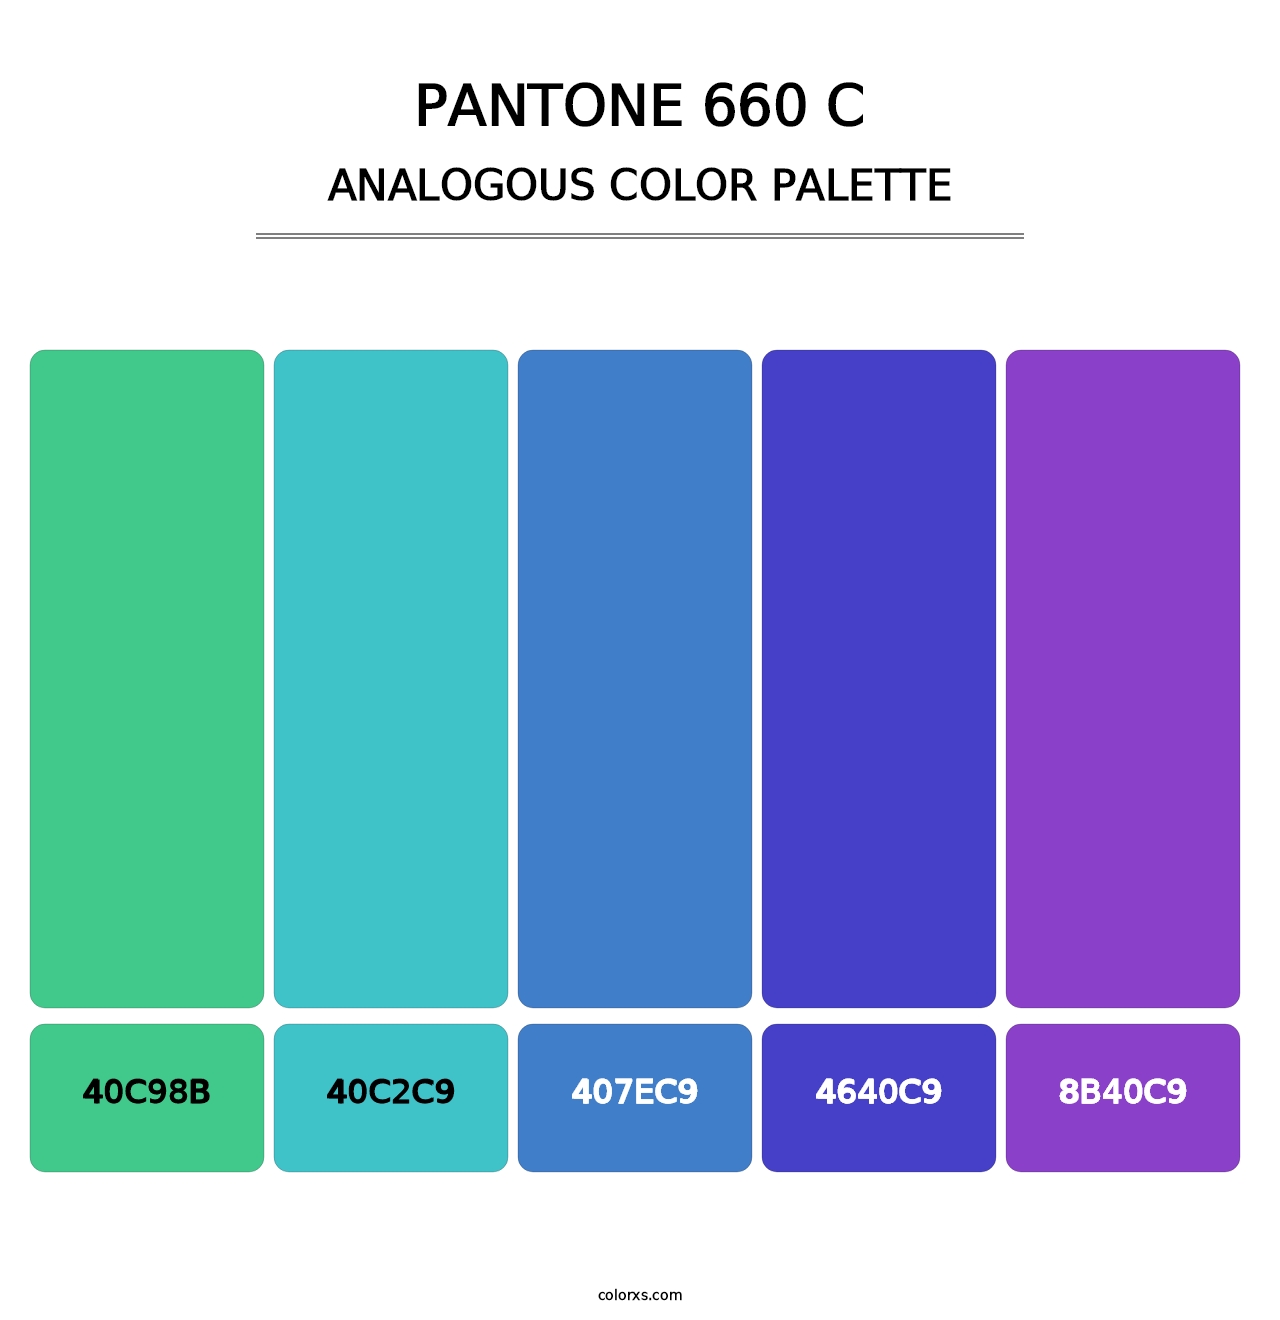 PANTONE 660 C - Analogous Color Palette